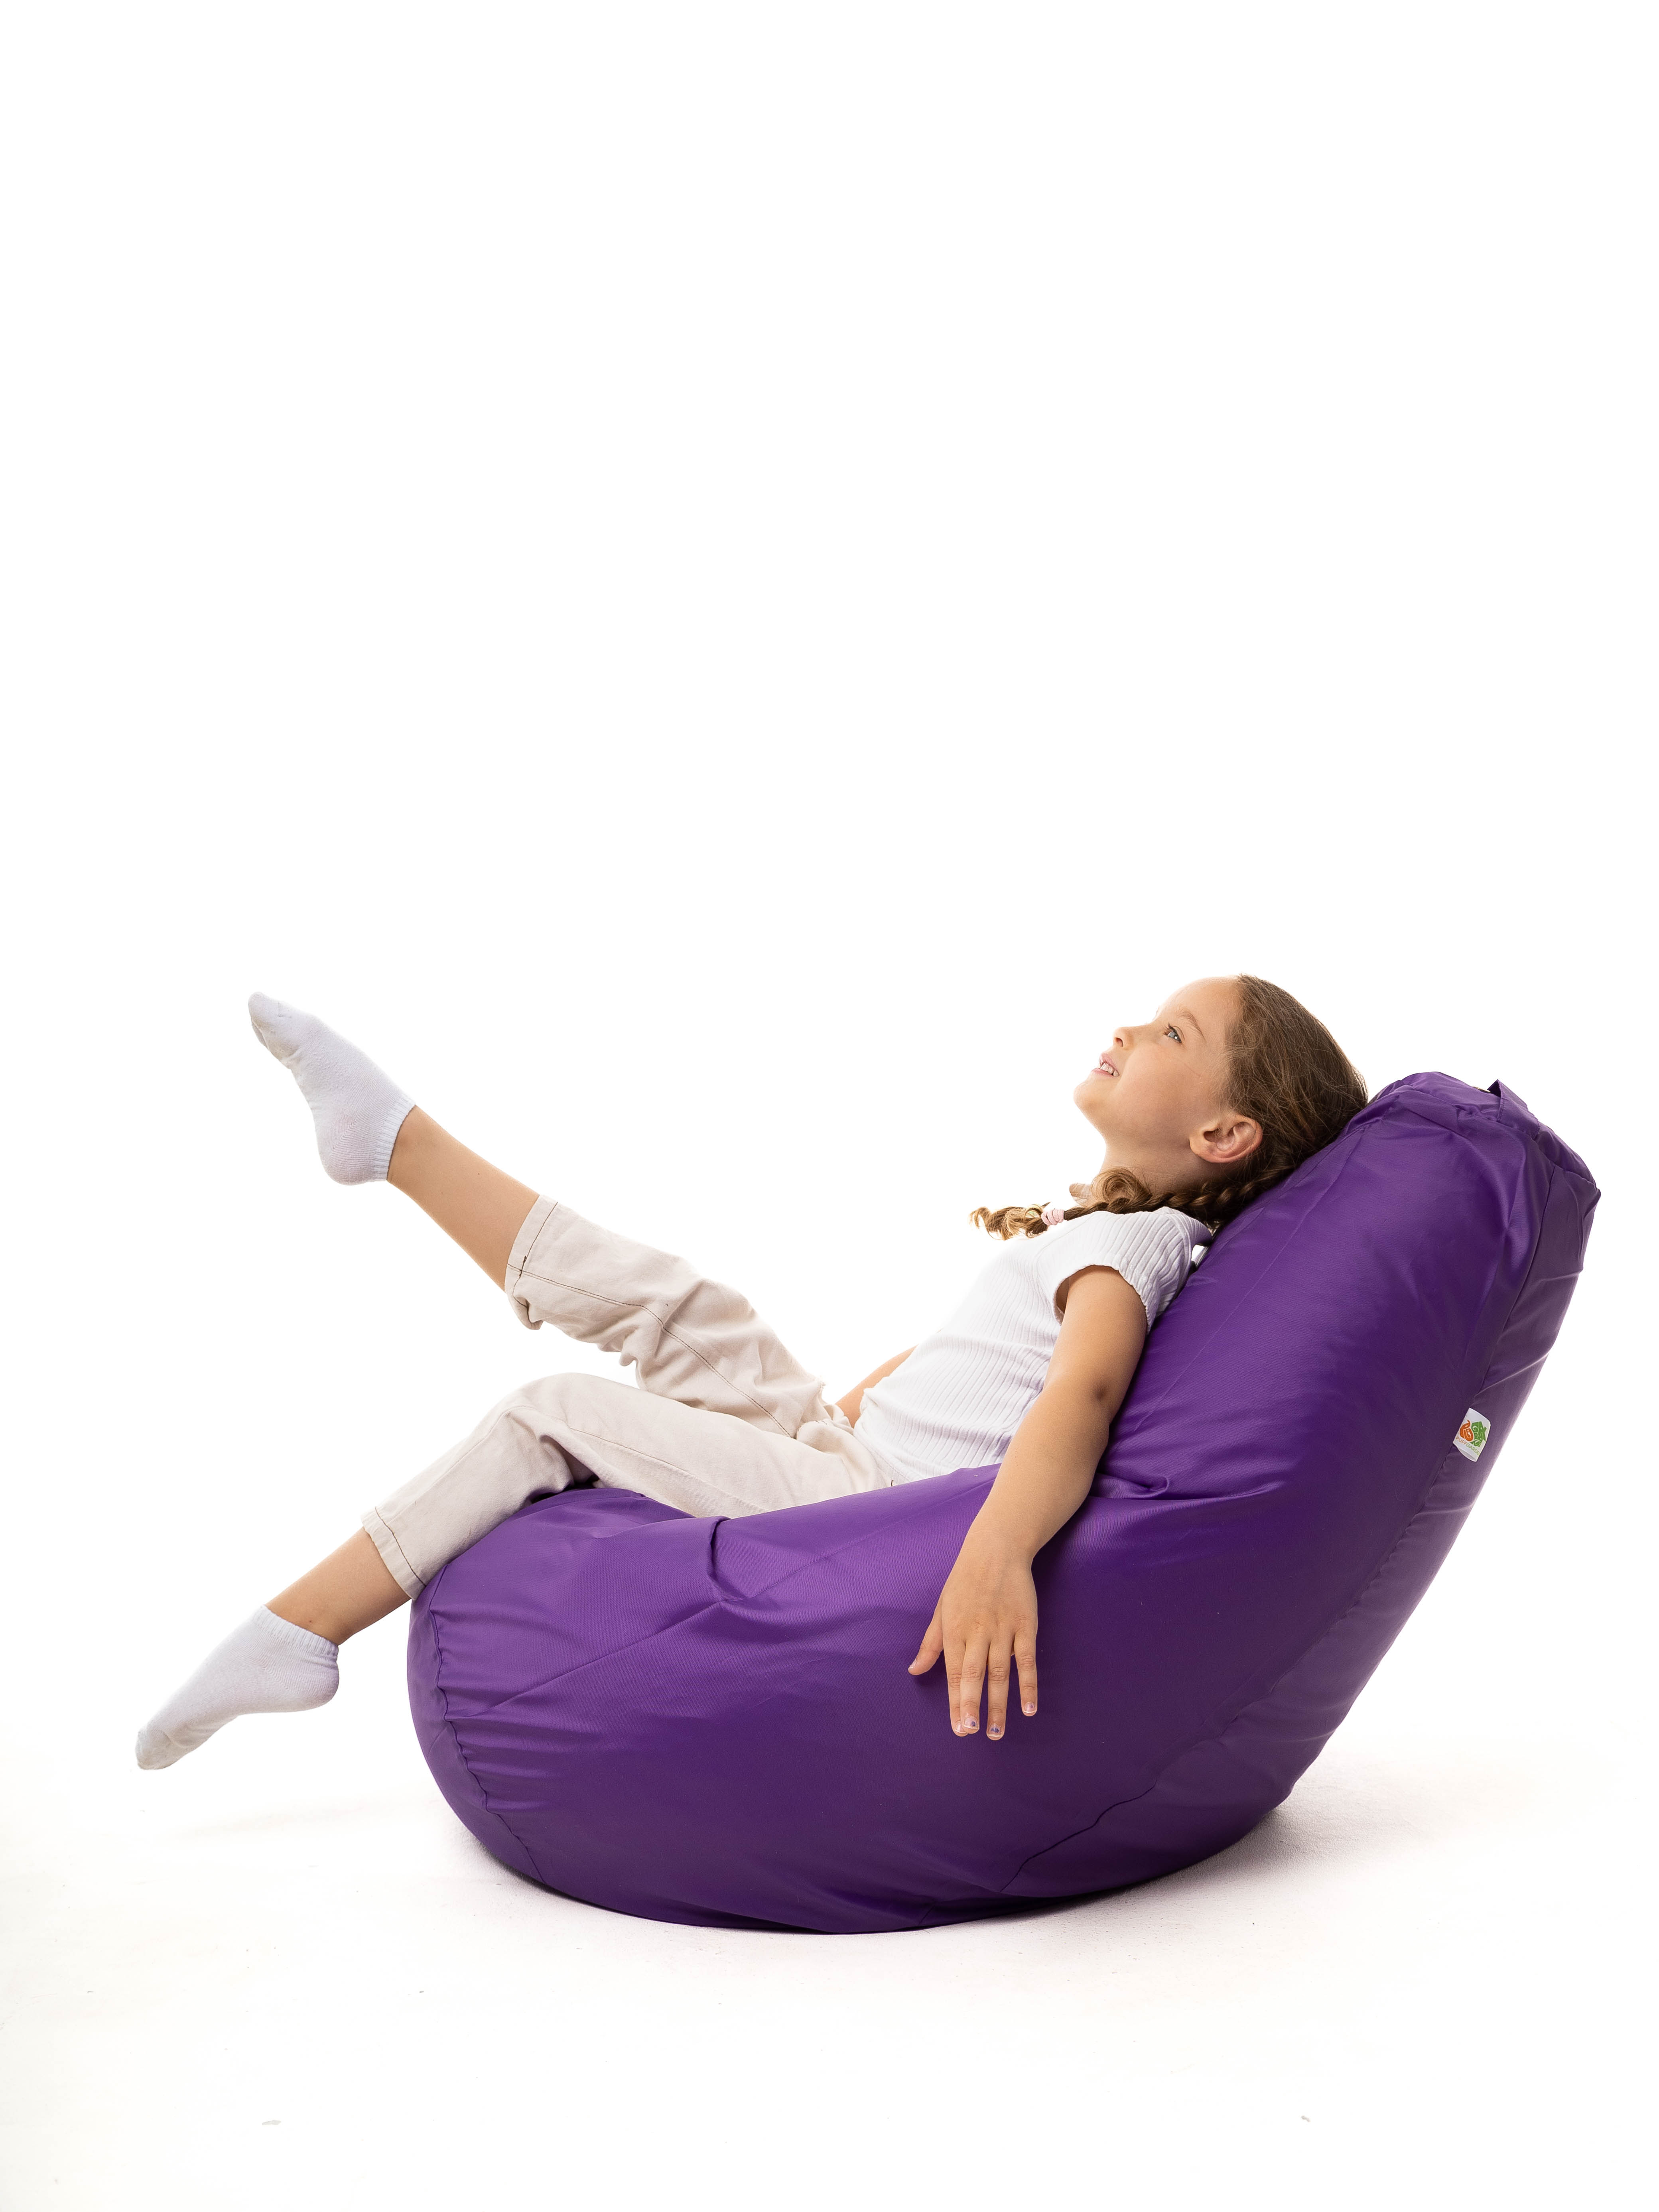 Кресло мешок груша PUFFGARDEN XL фиолетовое оксфорд ткань со съемным чехлом - фото 5